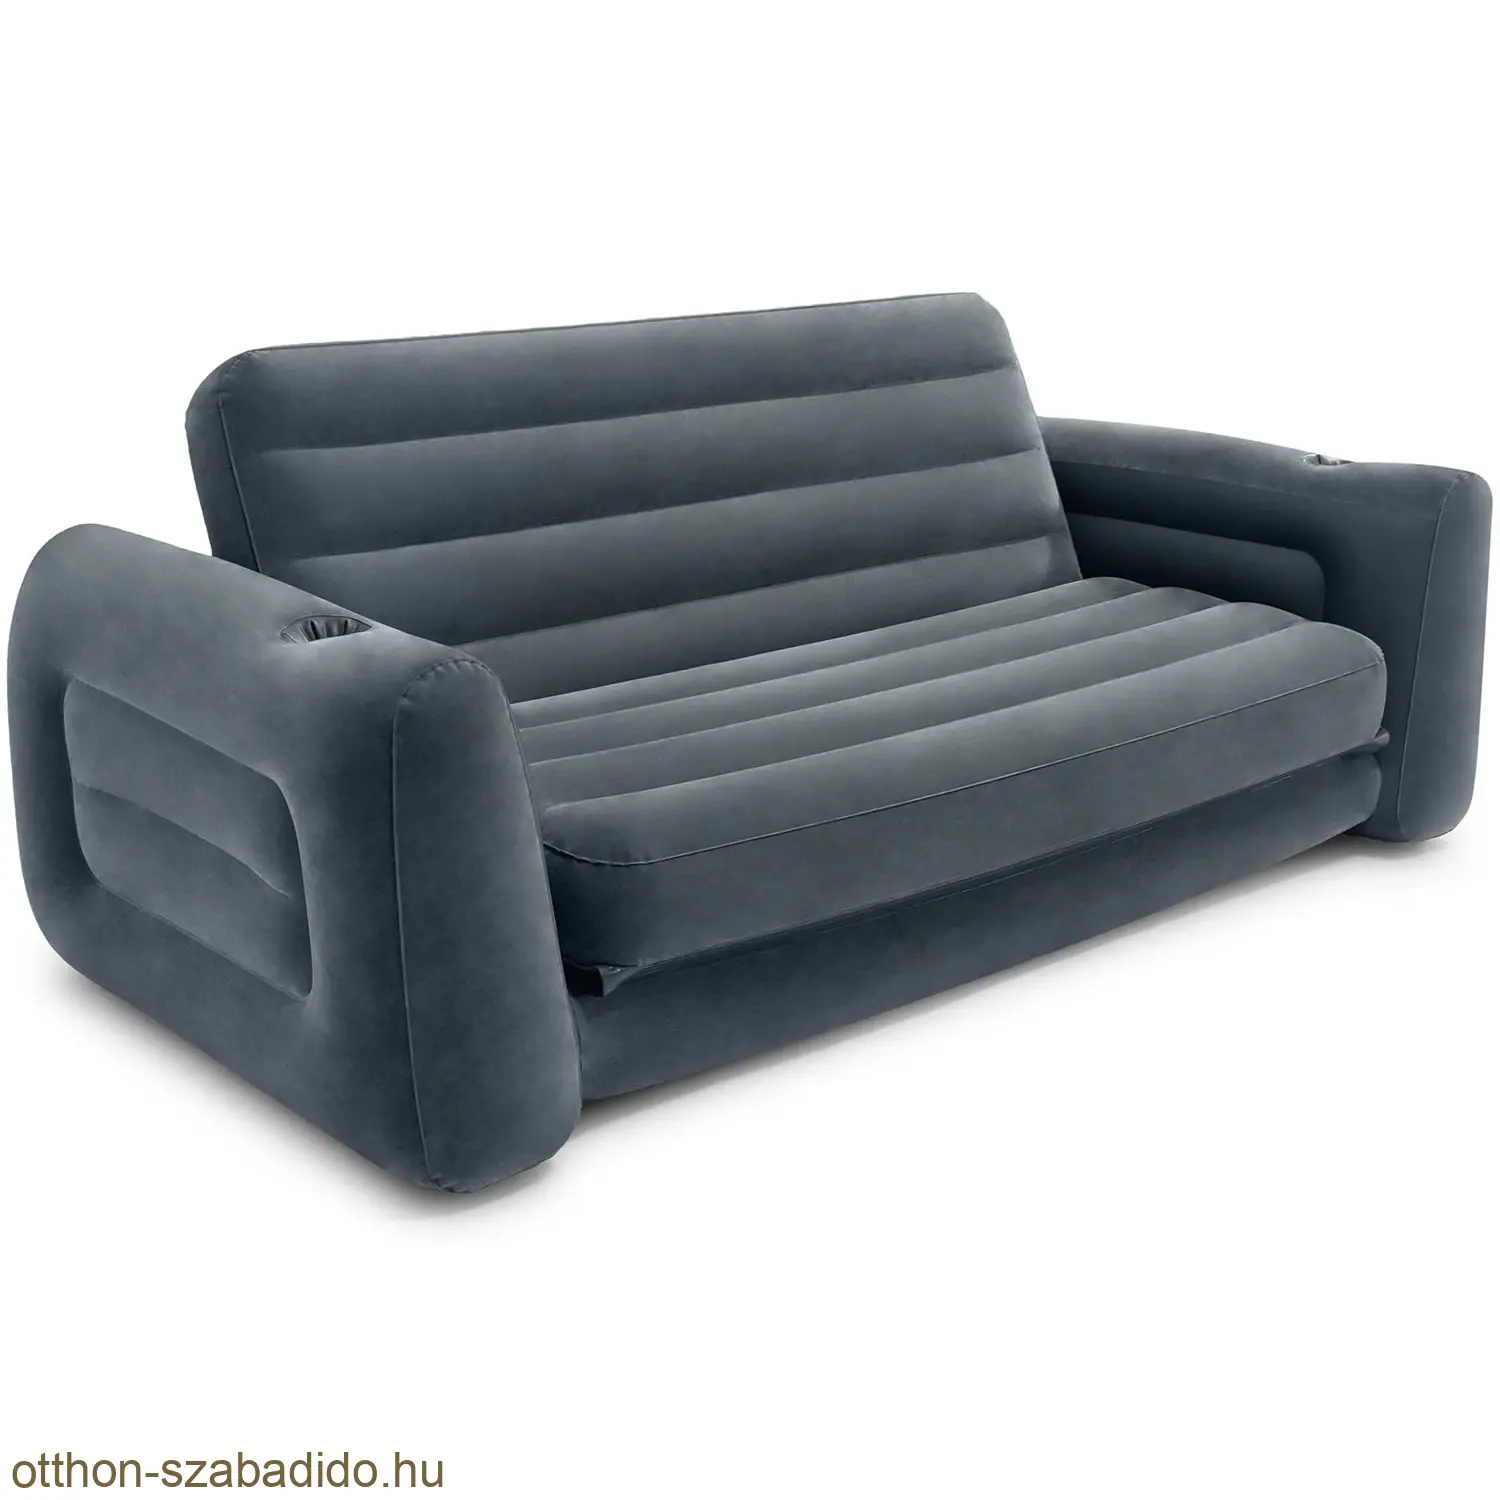 Intex kétszemélyes felfújható kanapé, ágyazható